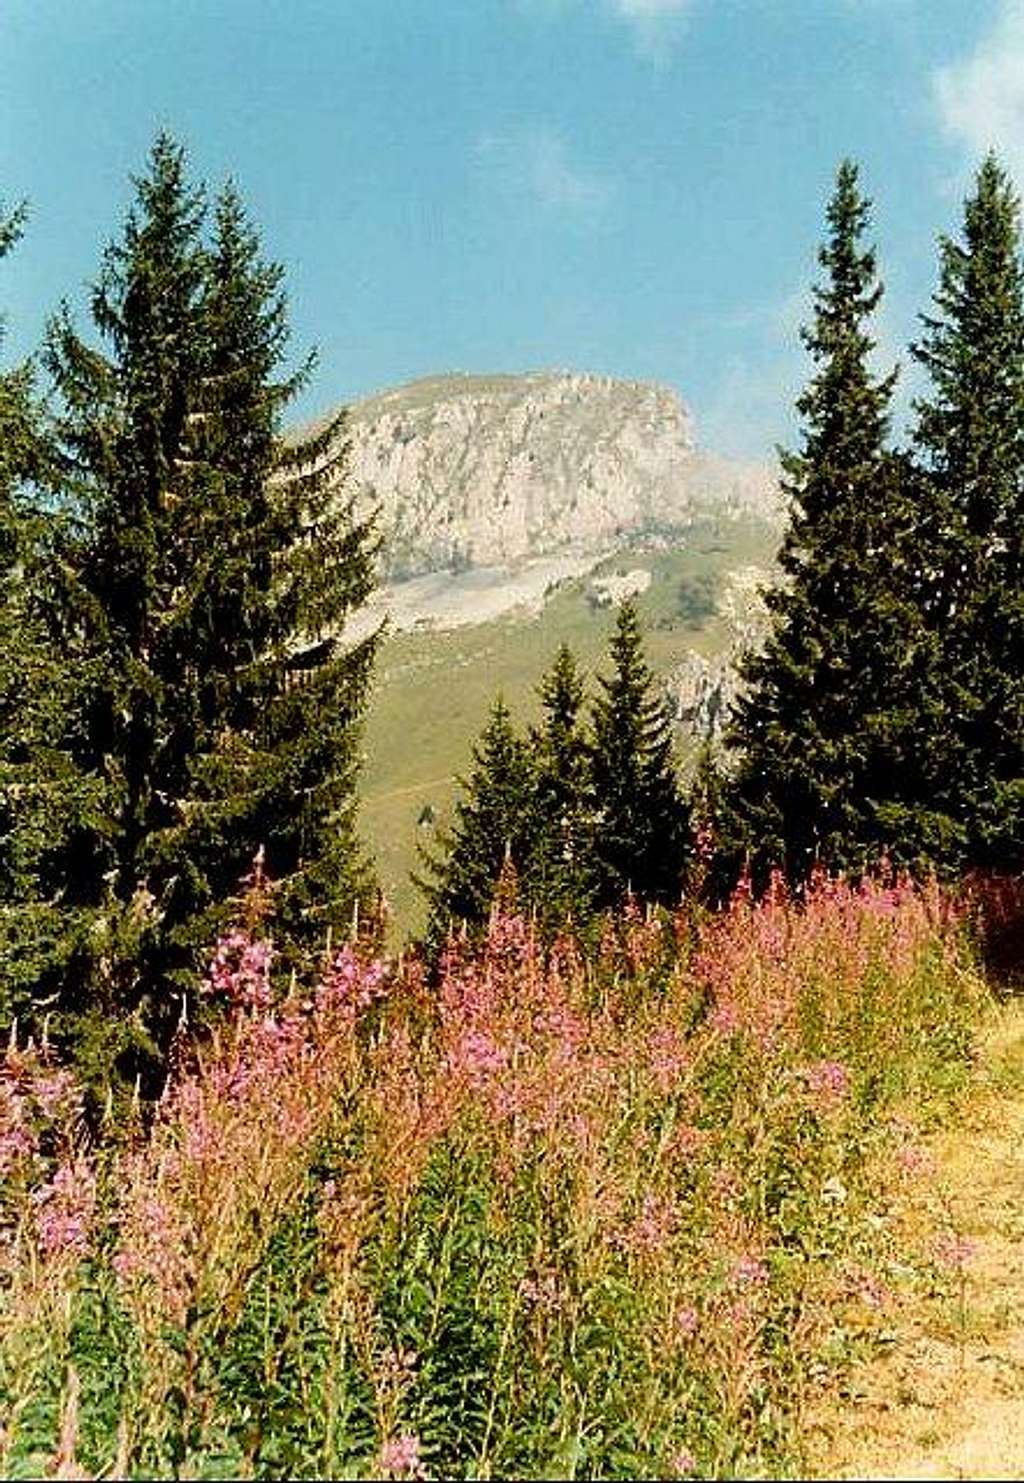 Mount Linleu (august 1994)